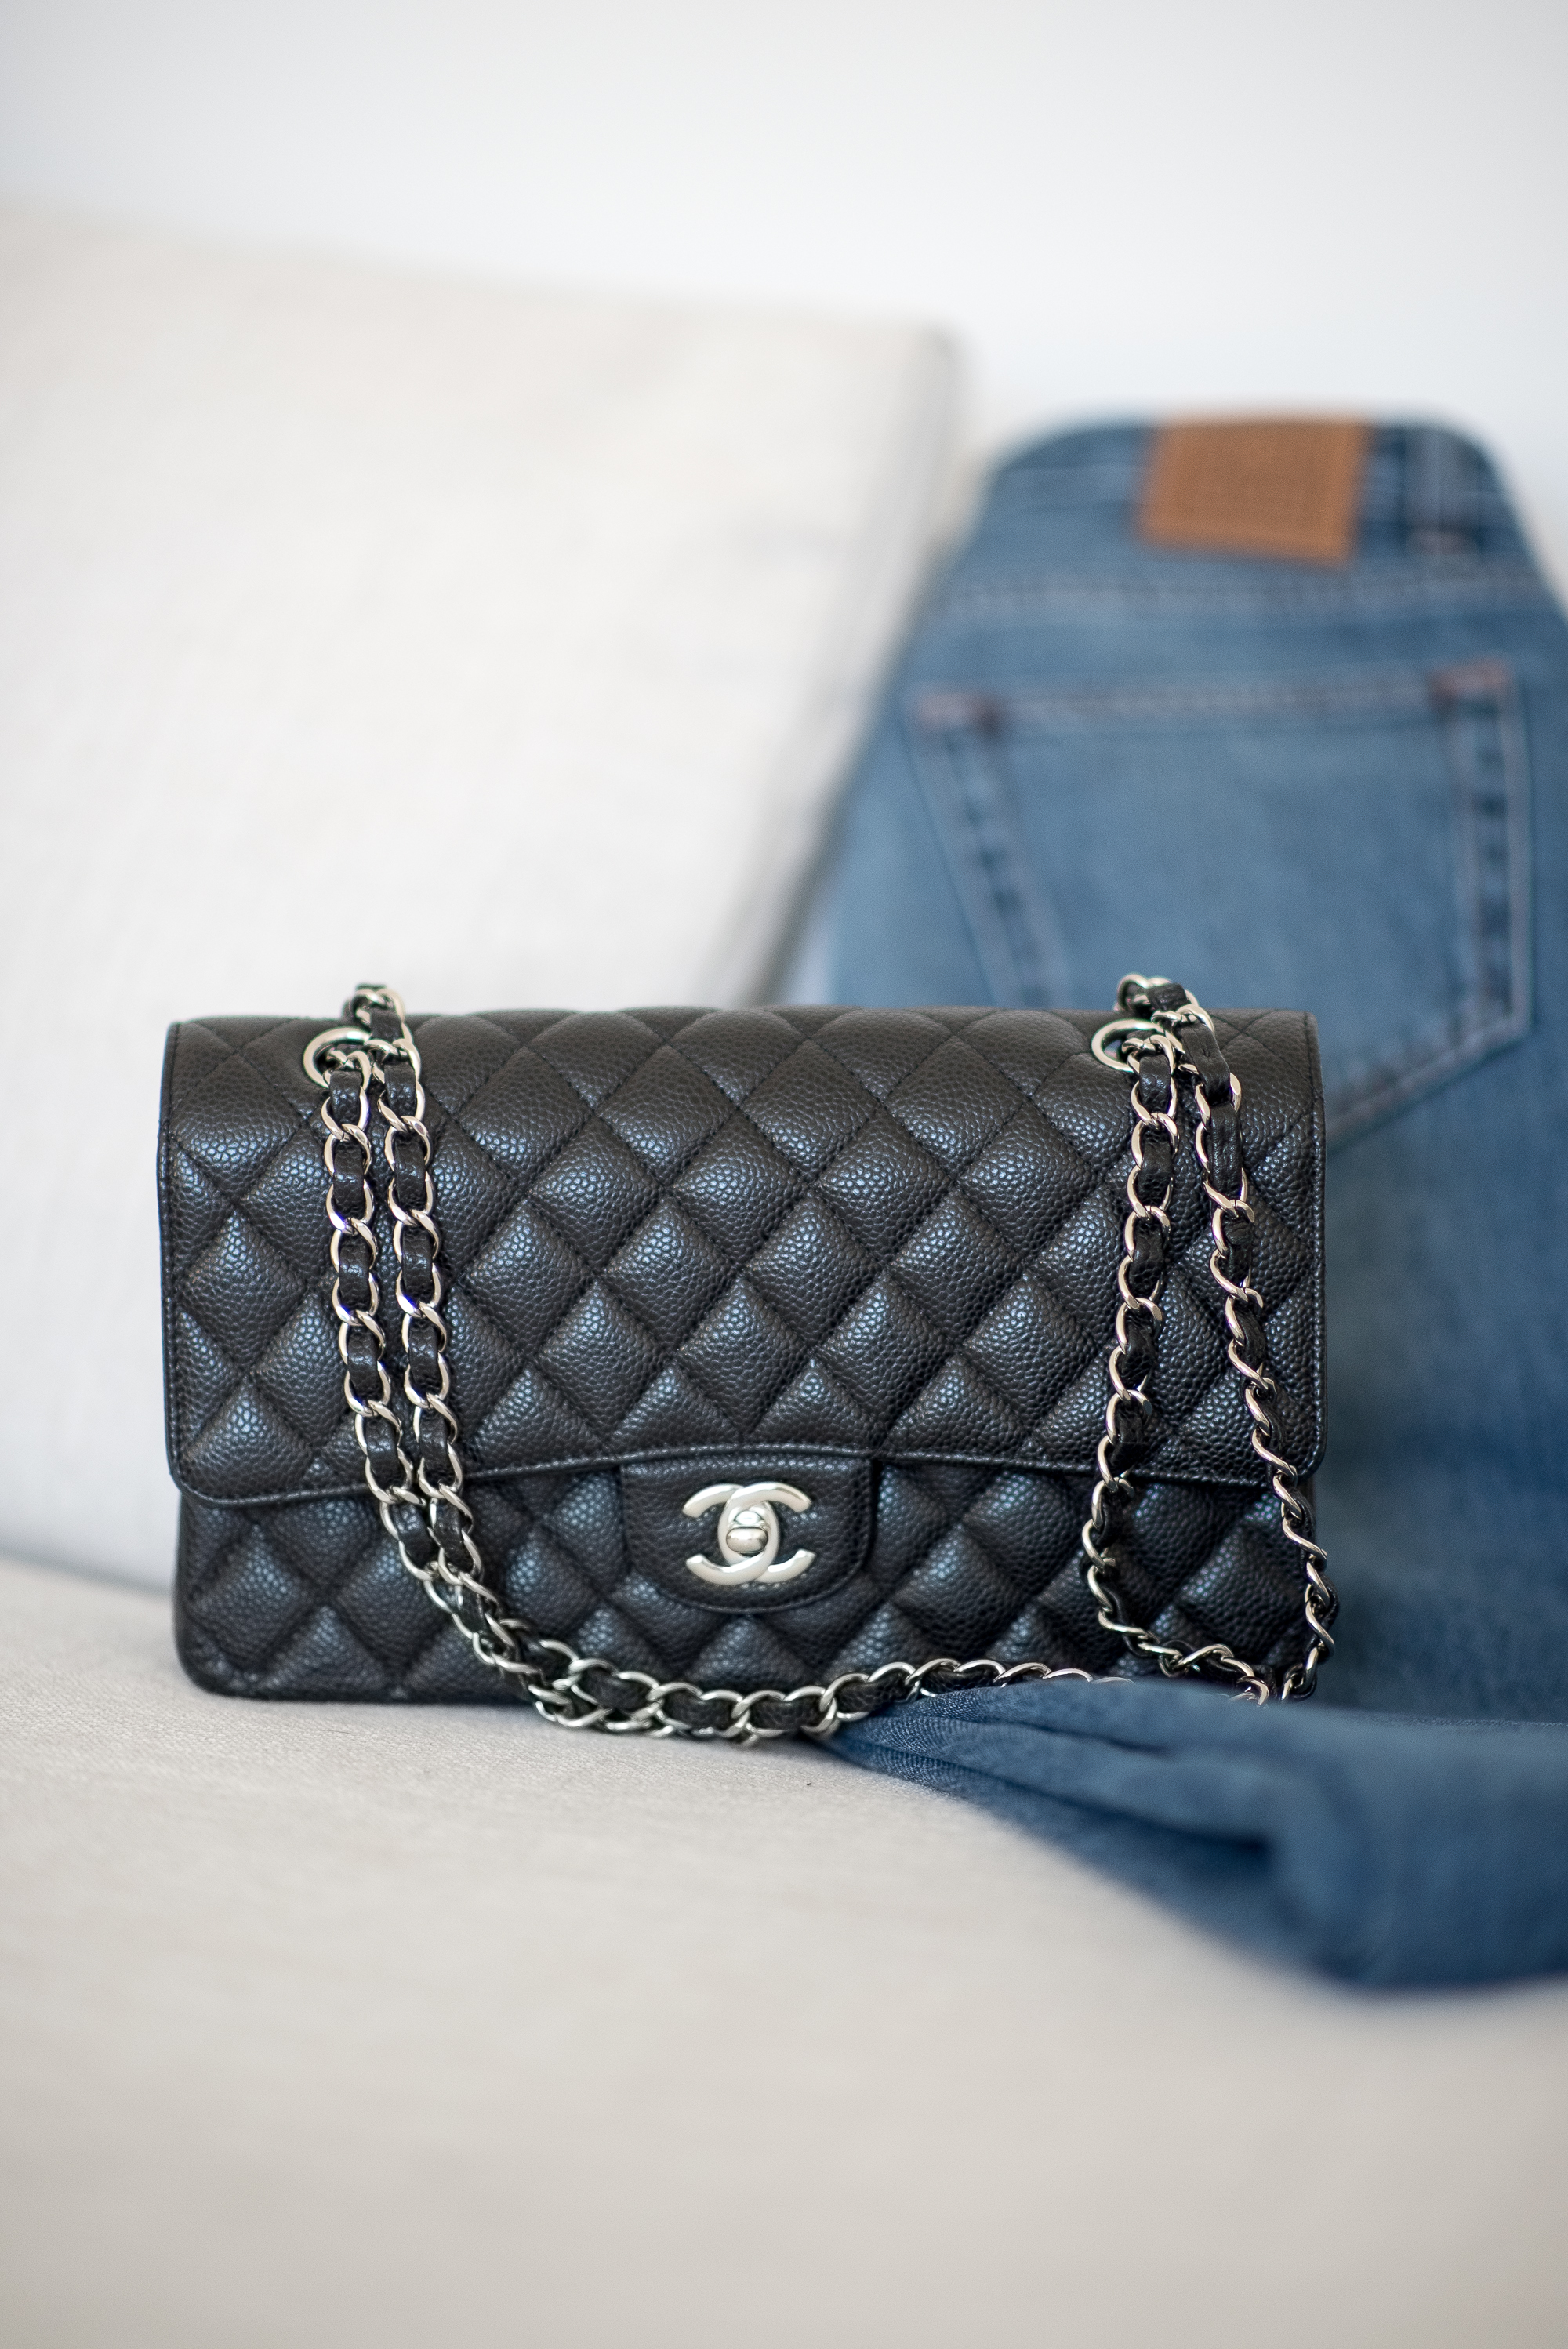 Chanel-laukut - klassiset mallit ja uudet tuotteet maailman brändistä